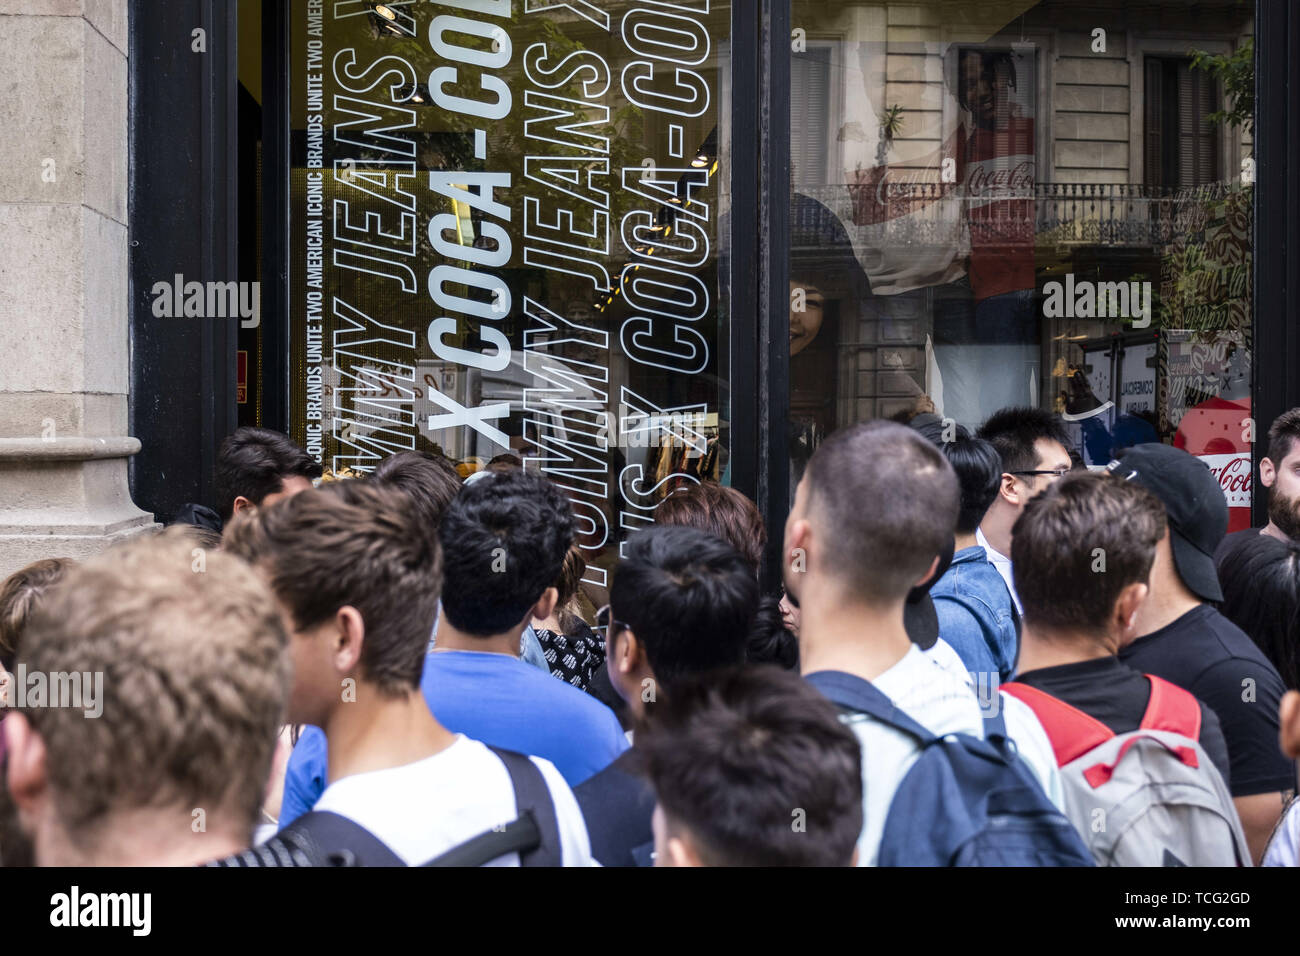 Barcelona, Cataluña, España. El 7 de junio de 2019. Un grupo de personas  espere enfrente de la zapatería durante las horas de apertura para comprar  el nuevo modelo de calzado de adidas.El